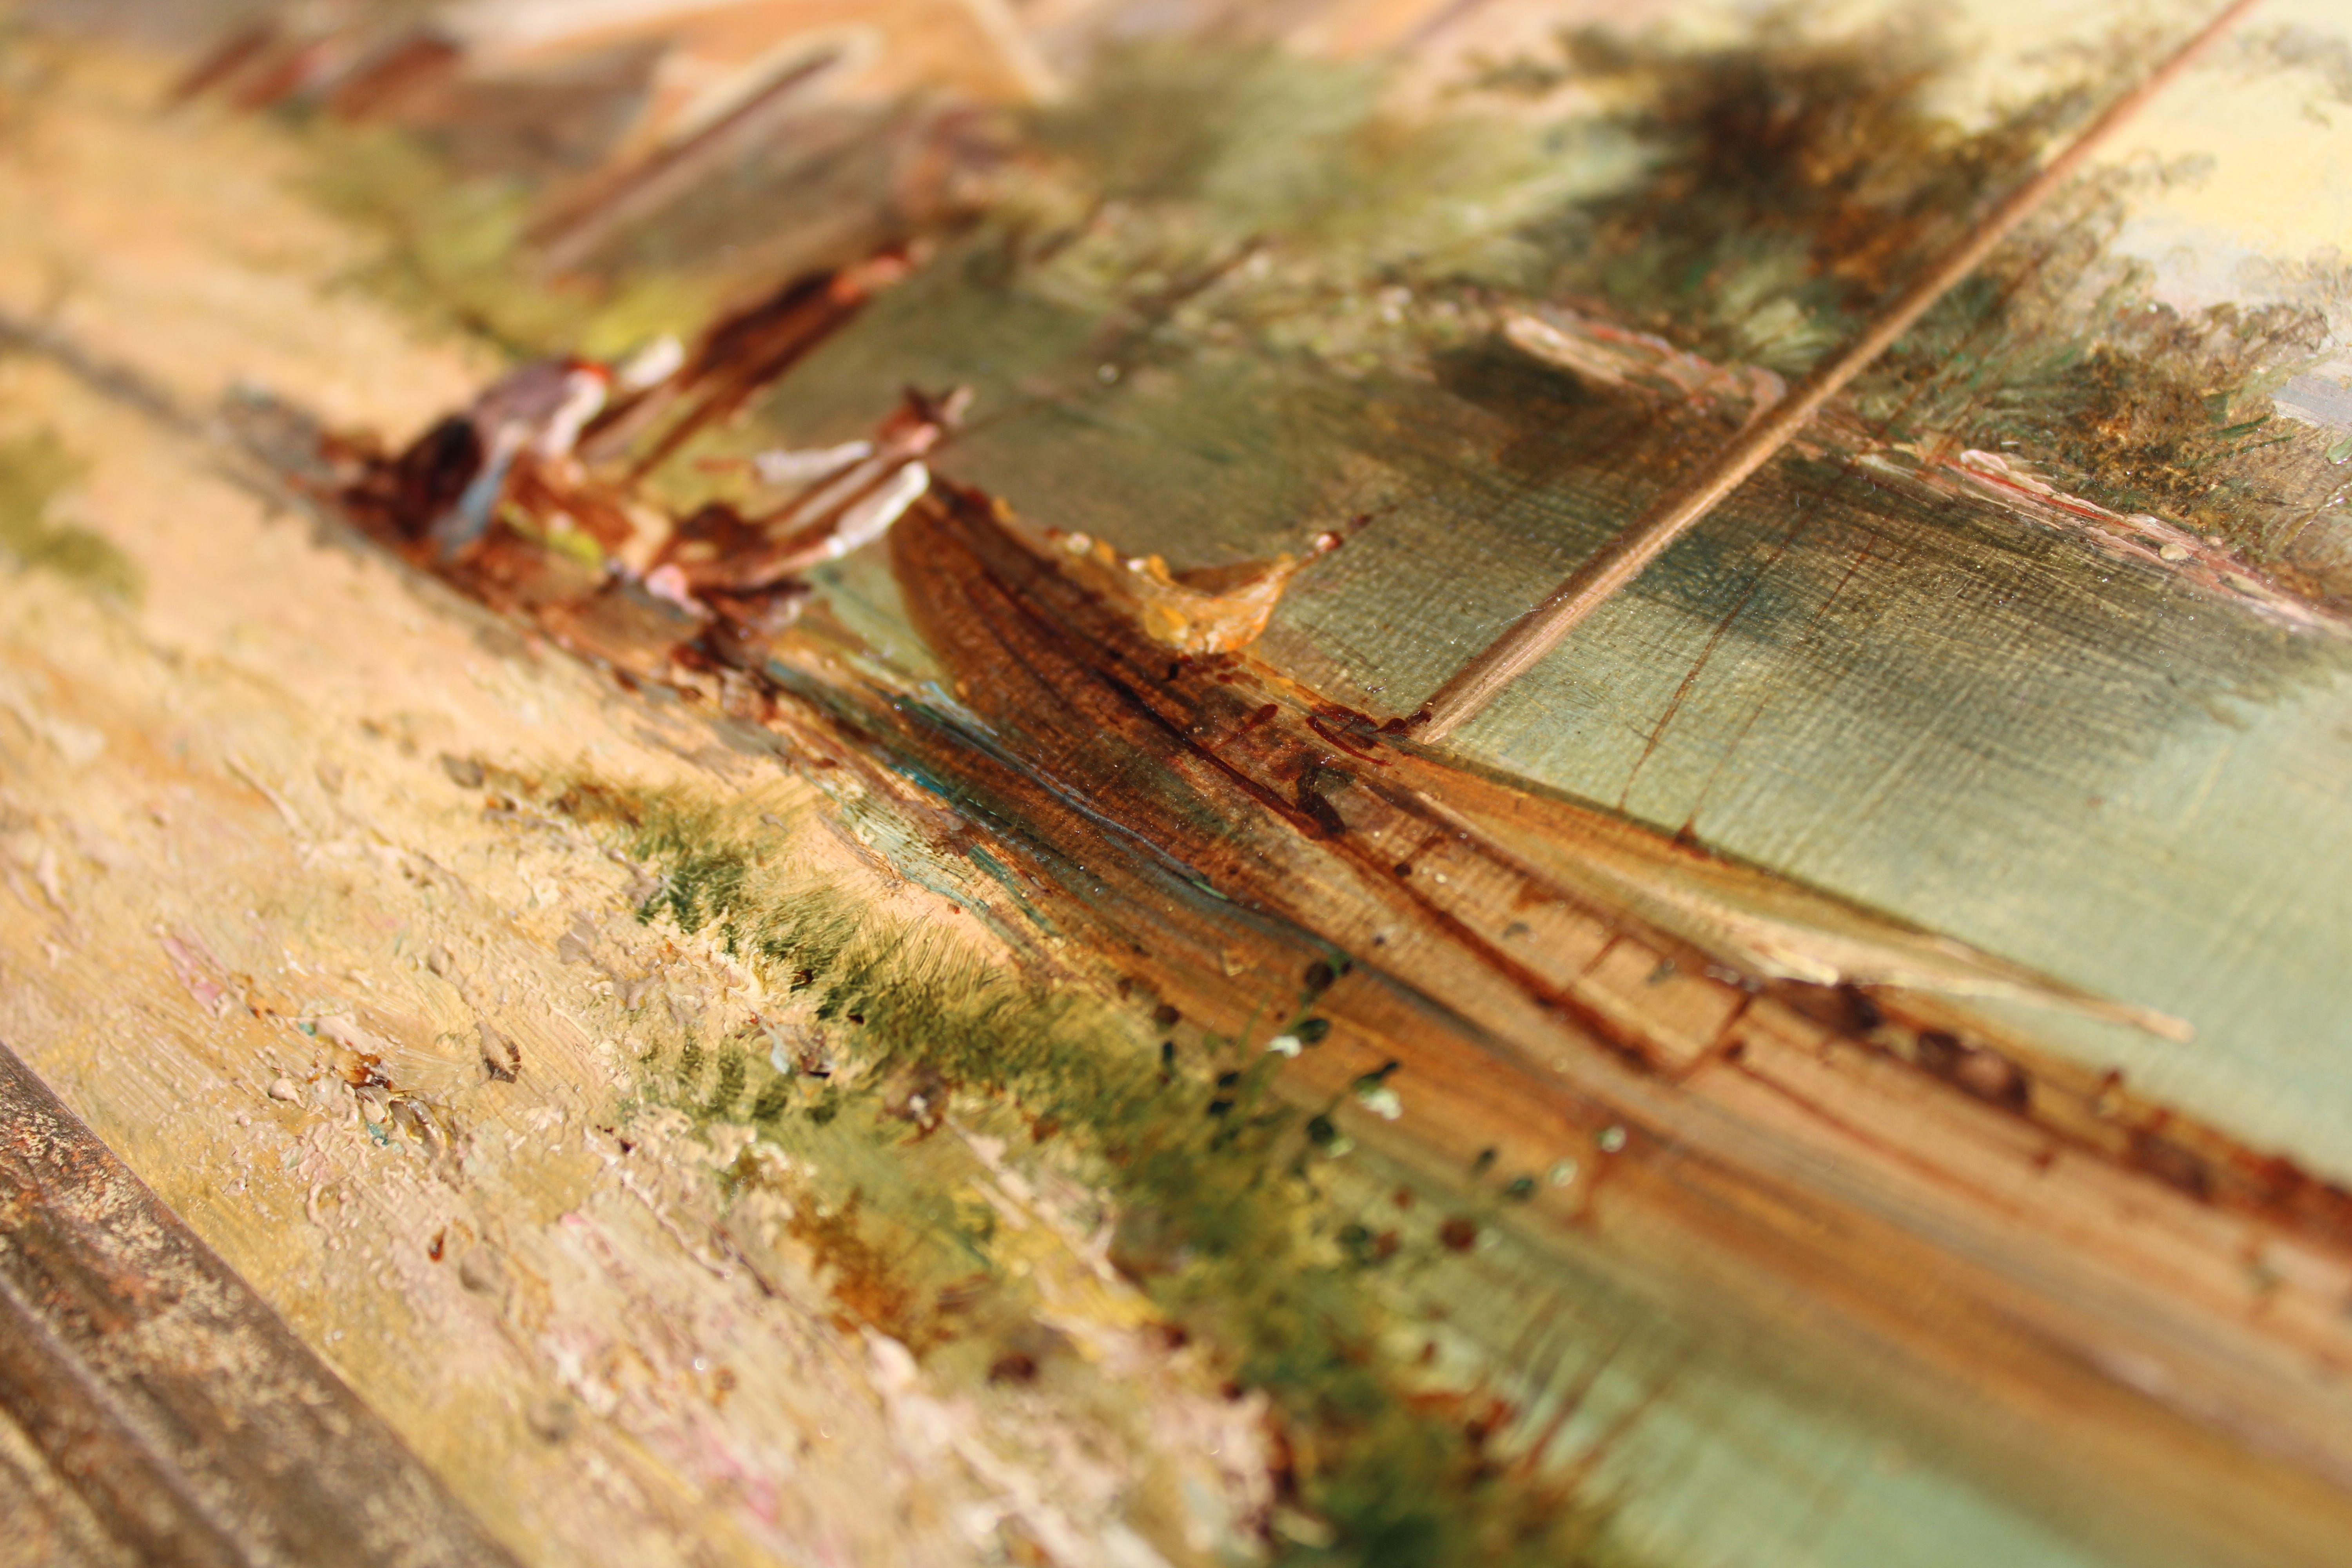 Dutch estuary landscape  Oil on canvas, 30x40.5 cm For Sale 5